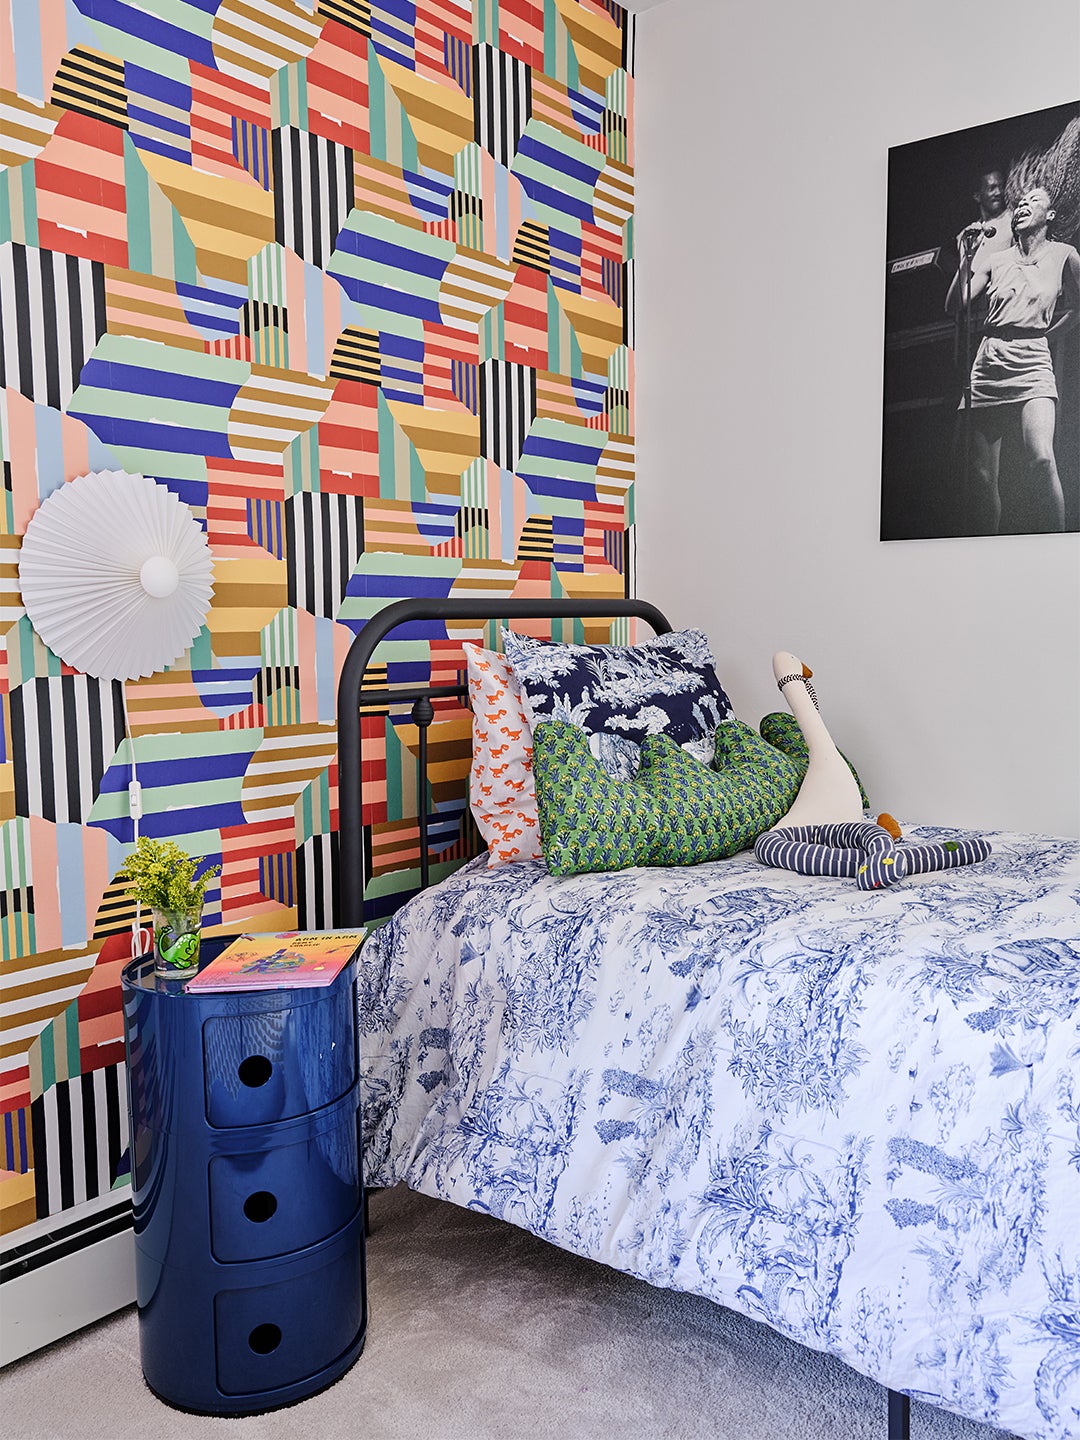 vibrant wallpaper behidn bed